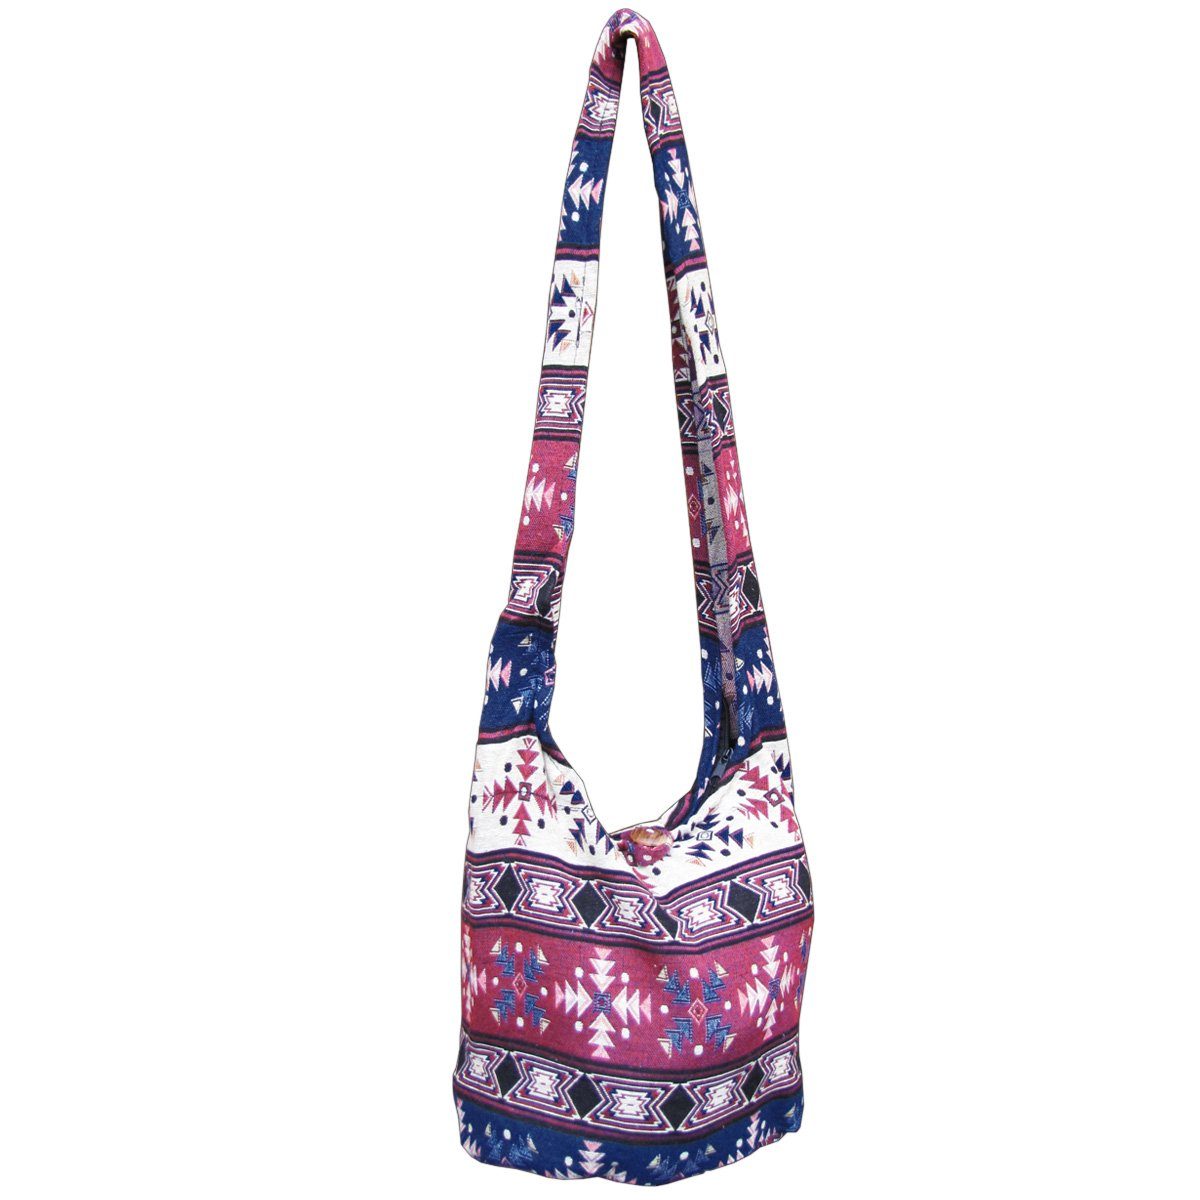 PANASIAM Strandtasche Schulterbeutel in gewebten Designs aus 100 % Baumwolle Umhängetasche, In 2 Größen Beuteltasche auch als Wickeltasche und Handtasche geeignet bordeauxton